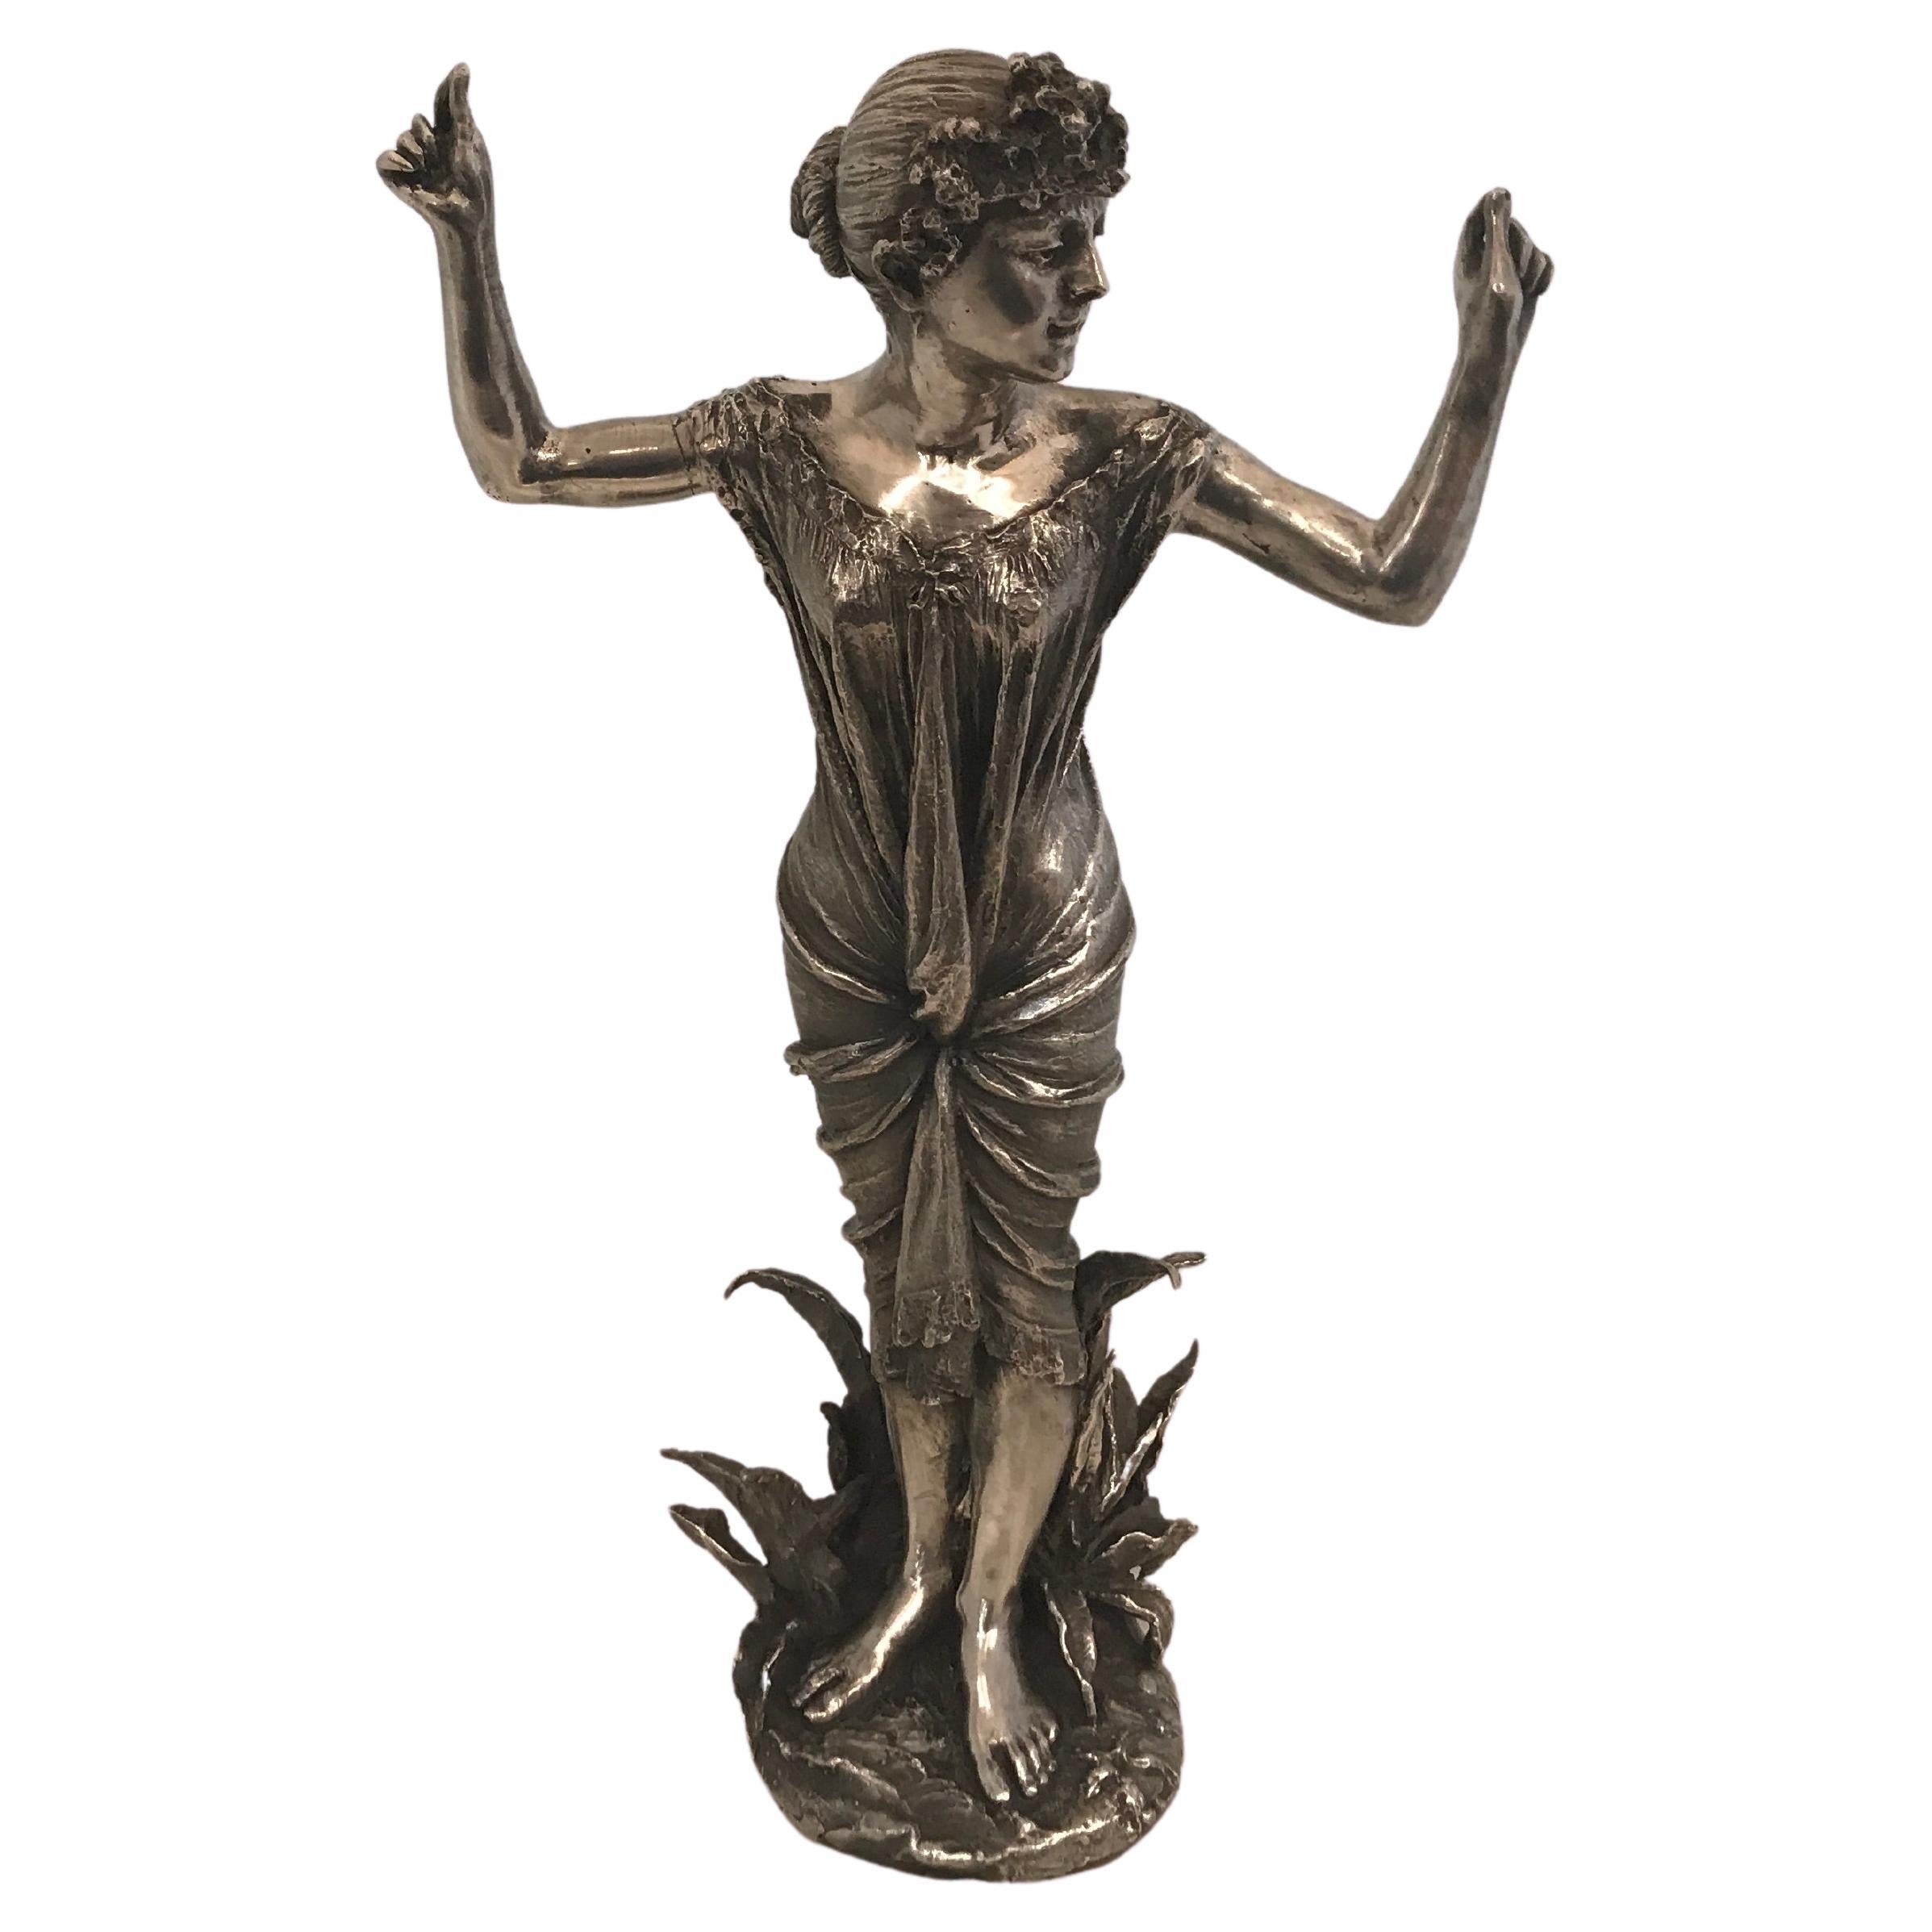 Woman Dancing Sculpture, France, Jugendstil, Art Nouveau, Liberty, 1900